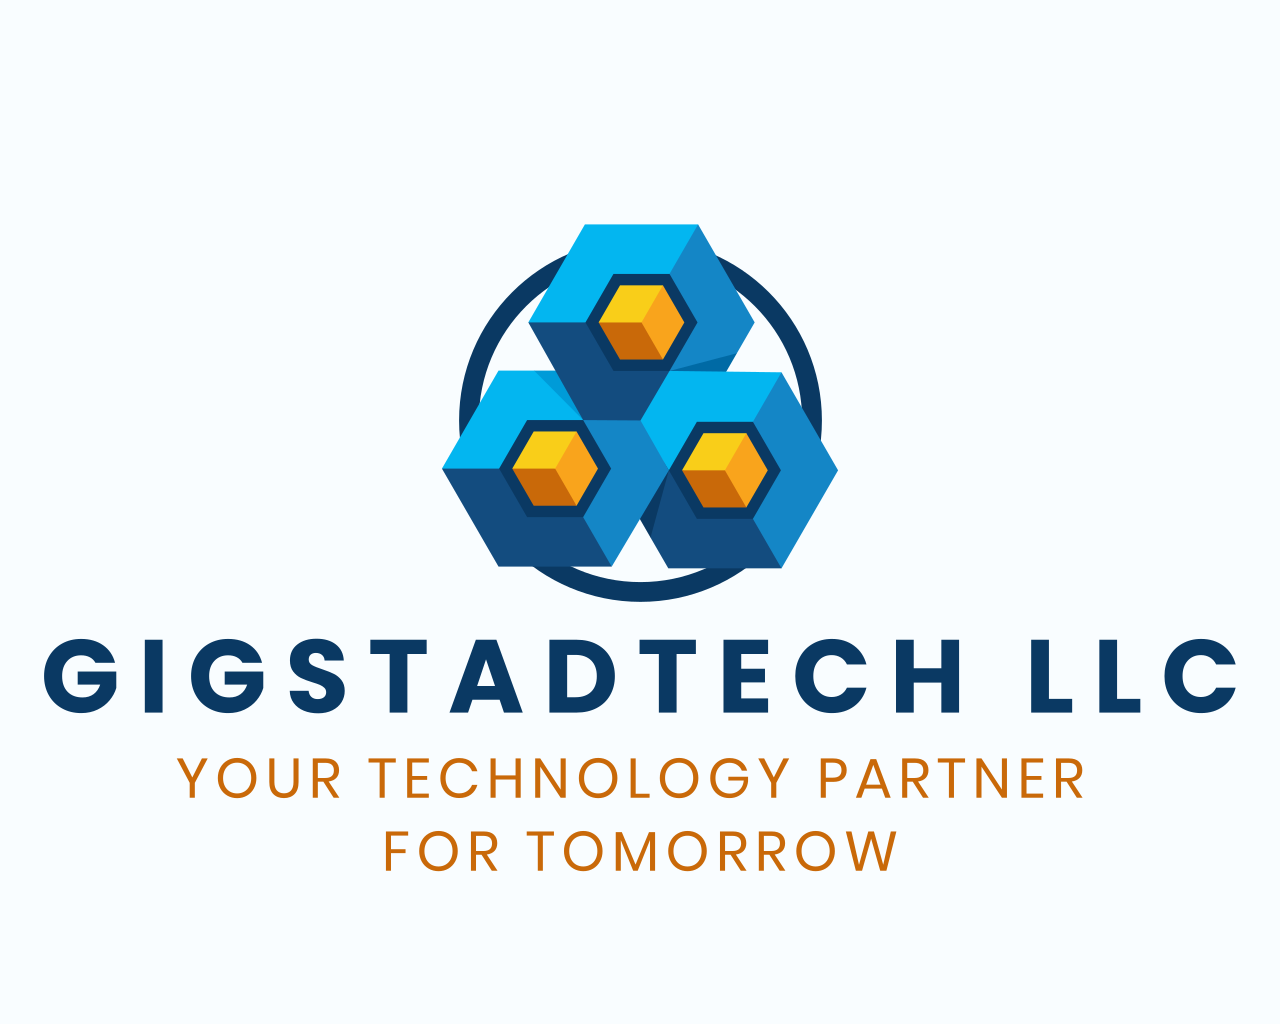 Gigstadtech LLC